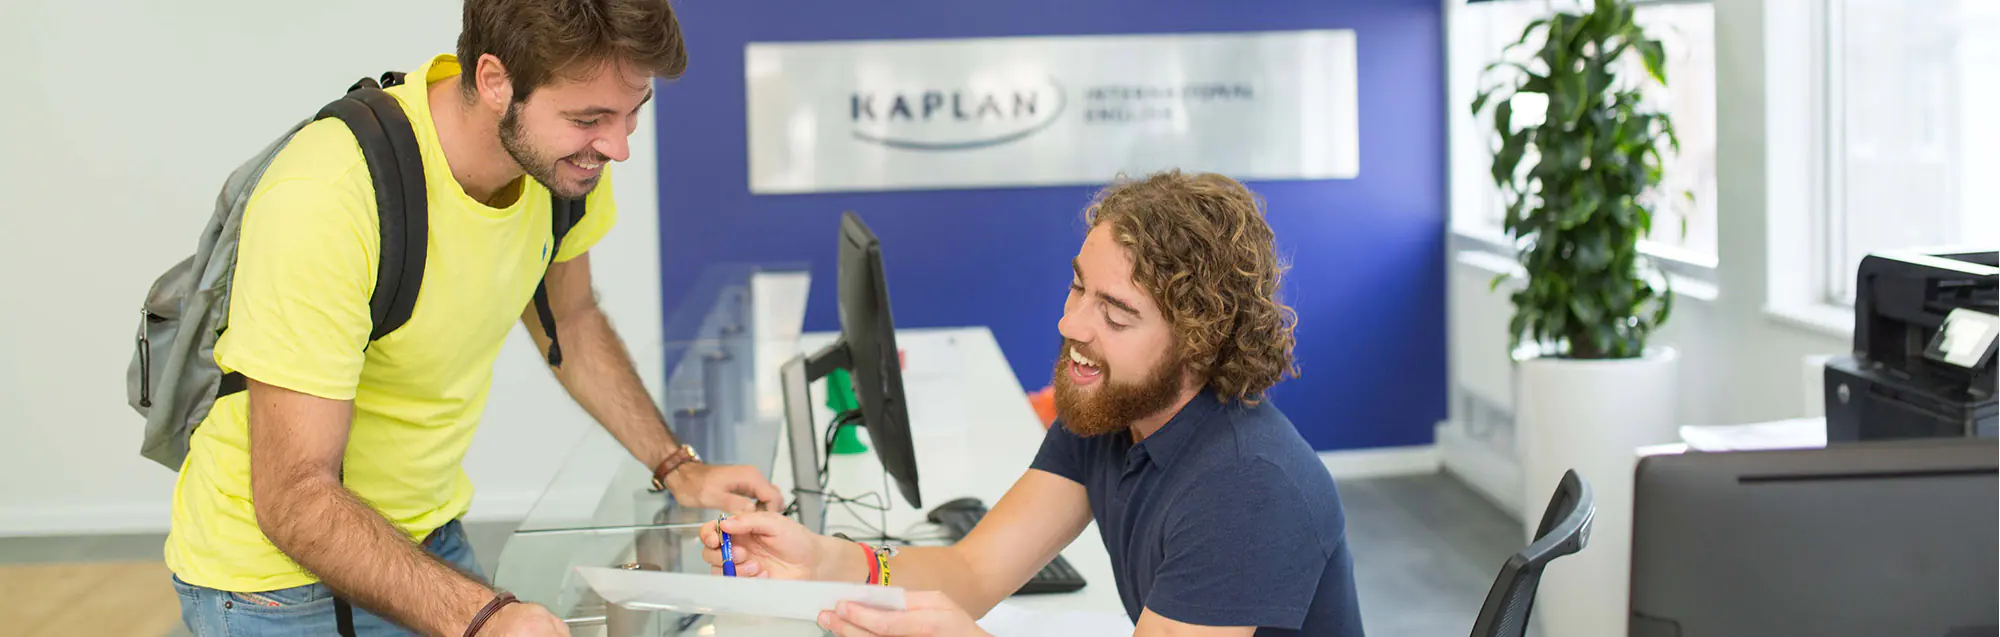 Les programmes de visa de étudier et travailler Kaplan Liverpool